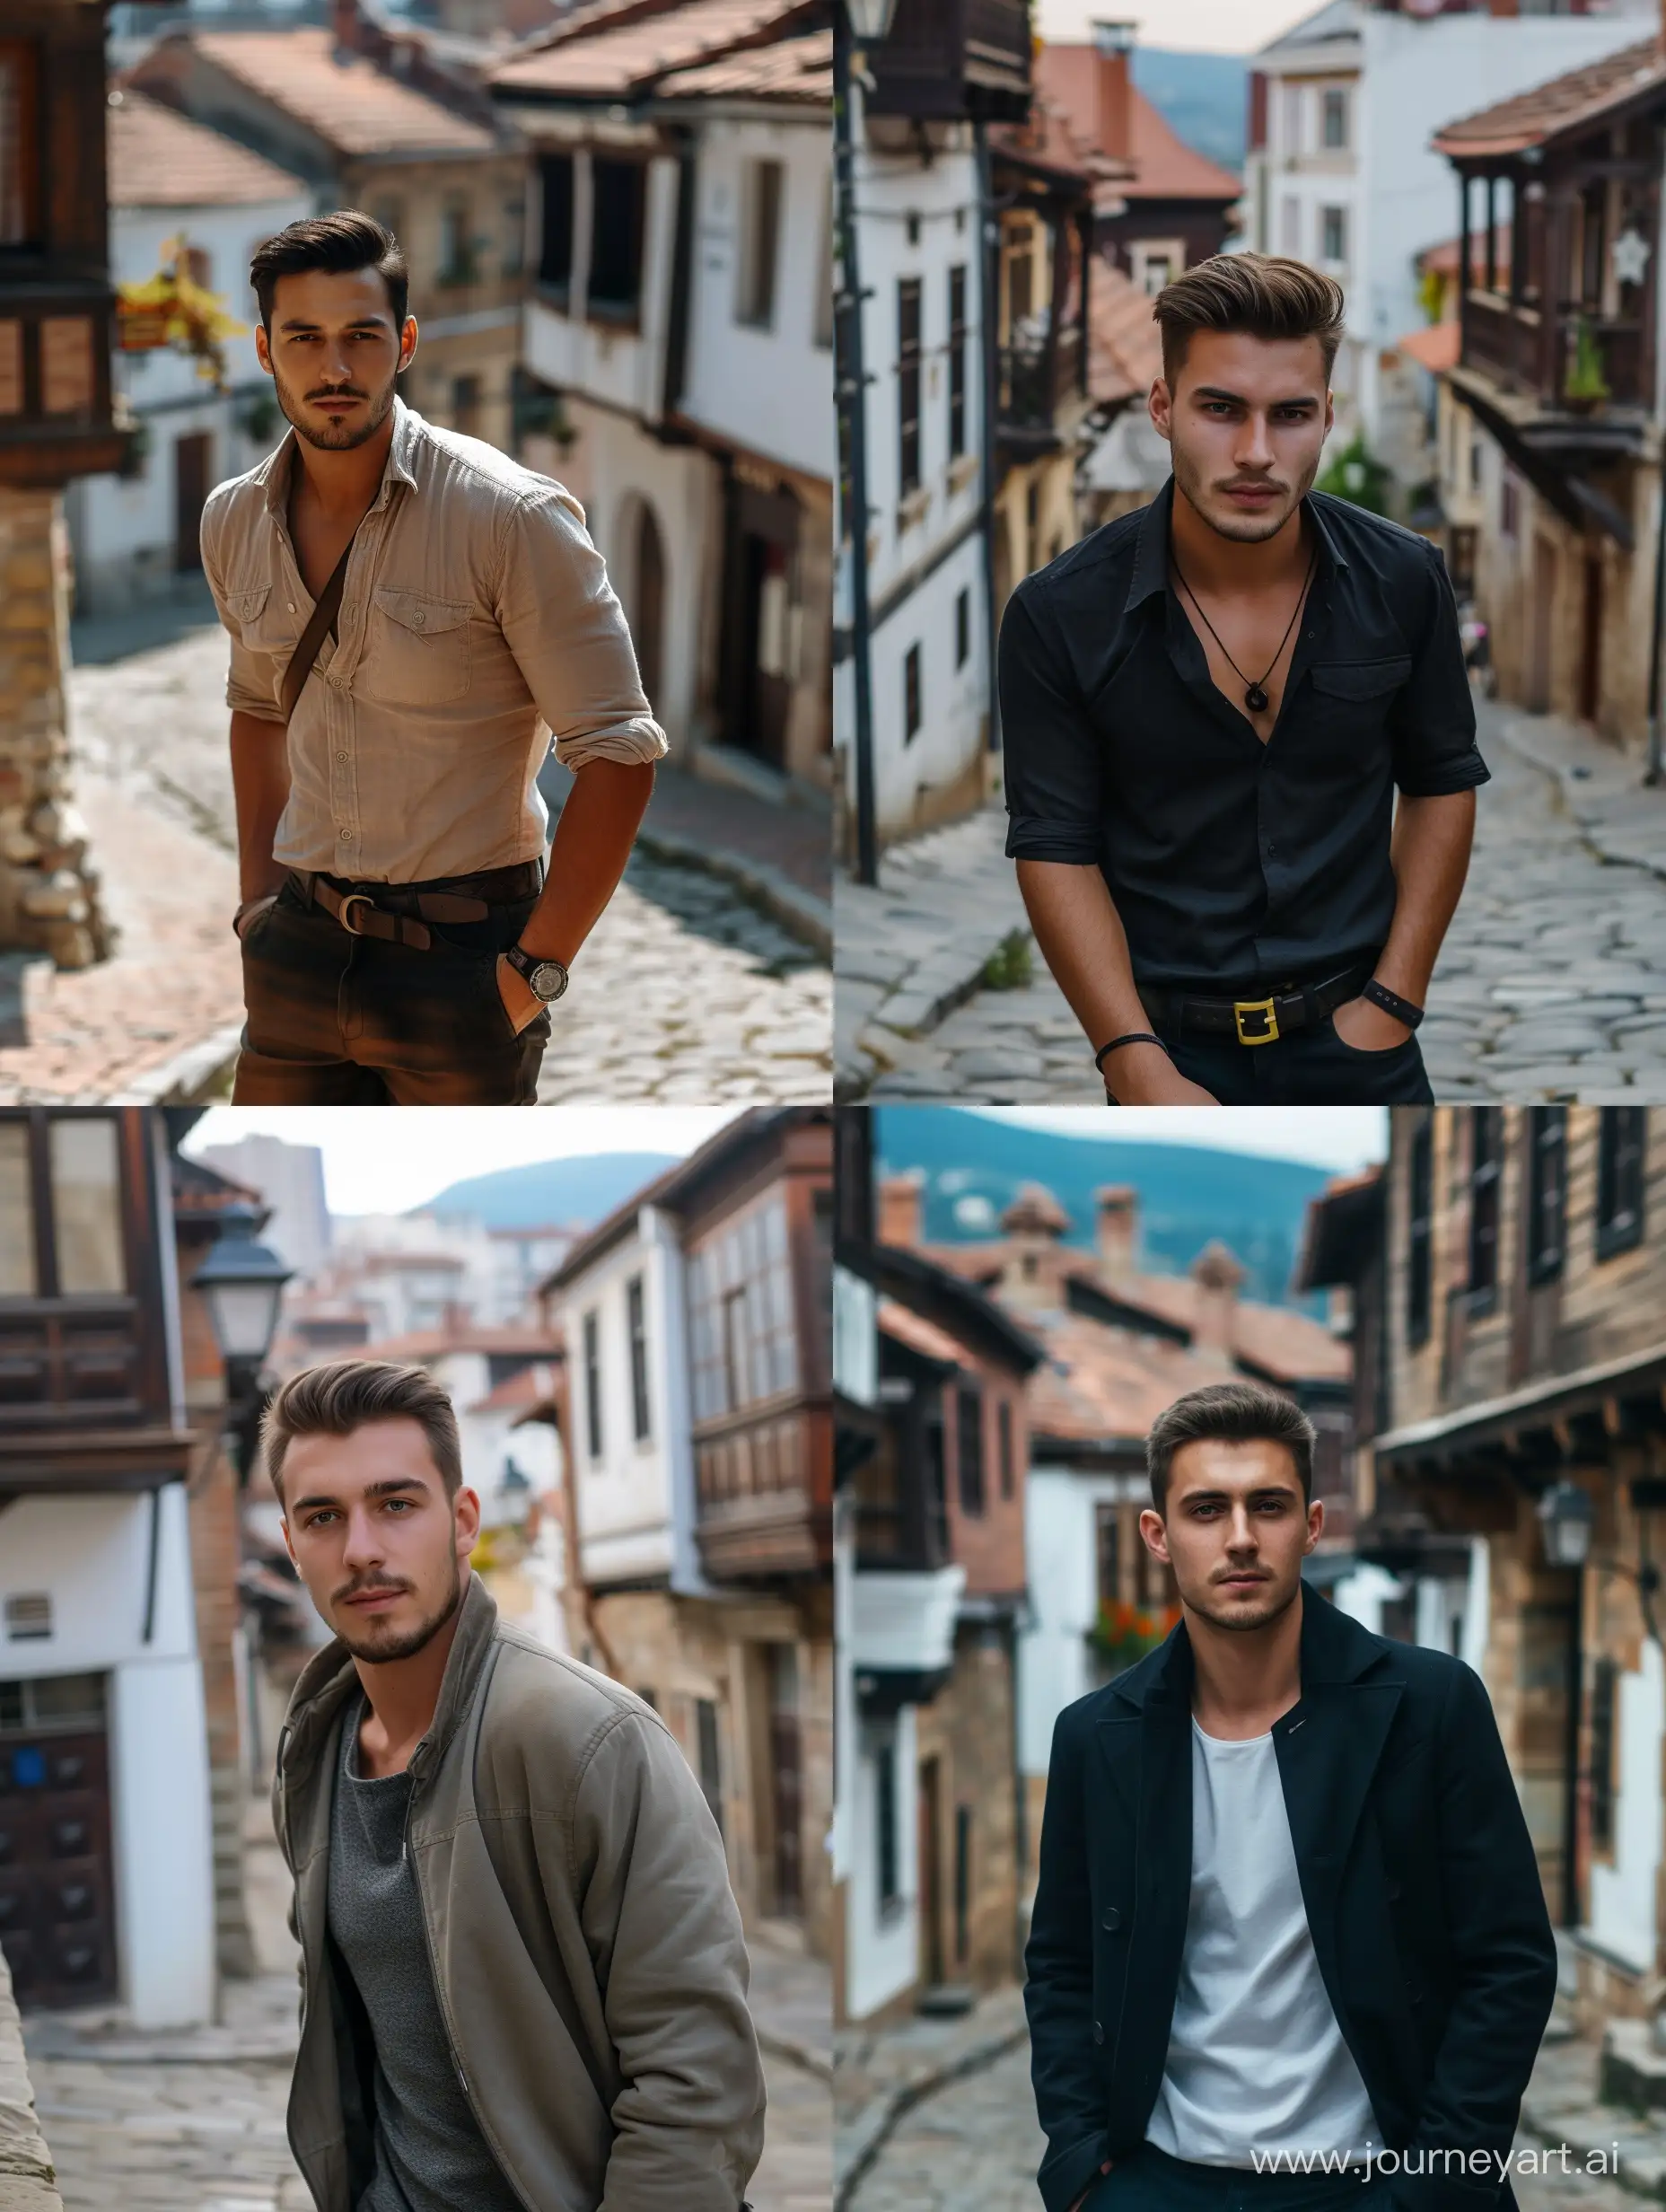 High-resolution, bulgarischer Mann jung hübsch in der Altstadt plowdiv, 4k realistisch